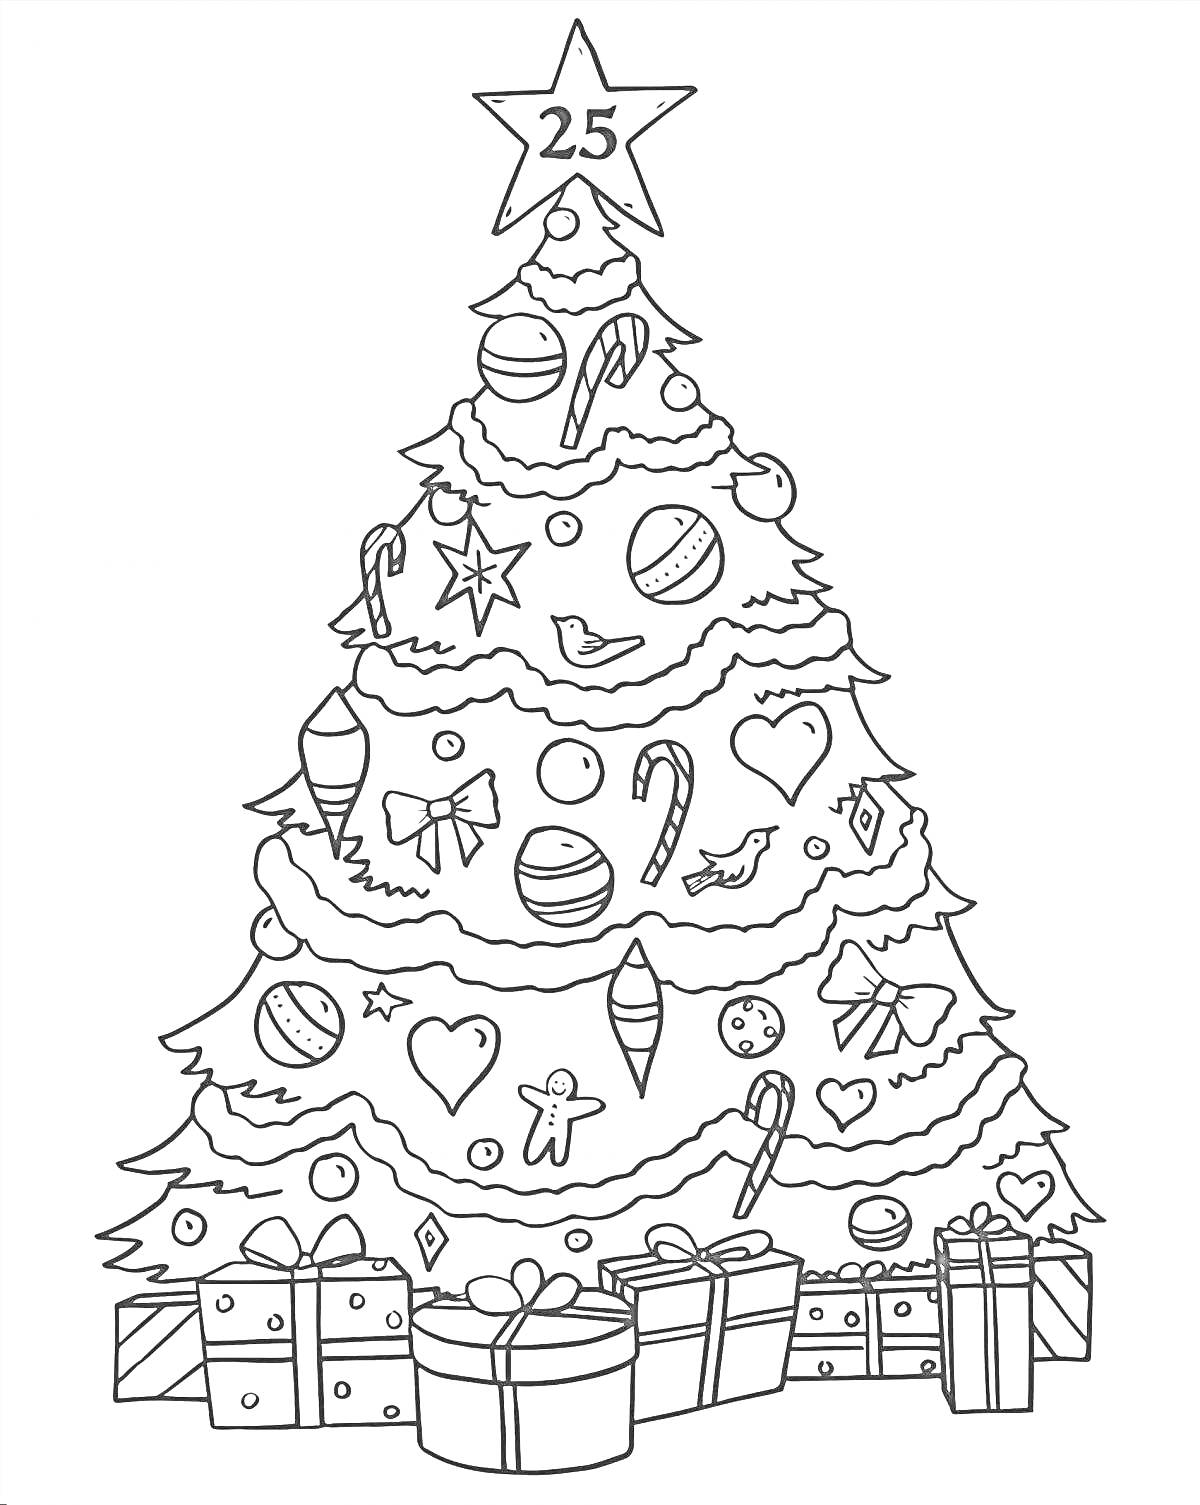 Раскраска Елка новогодняя с верхушкой-звездой, украшенная шарами, конфетами, сердцами, подарками, с птицей и ангелом на ветках